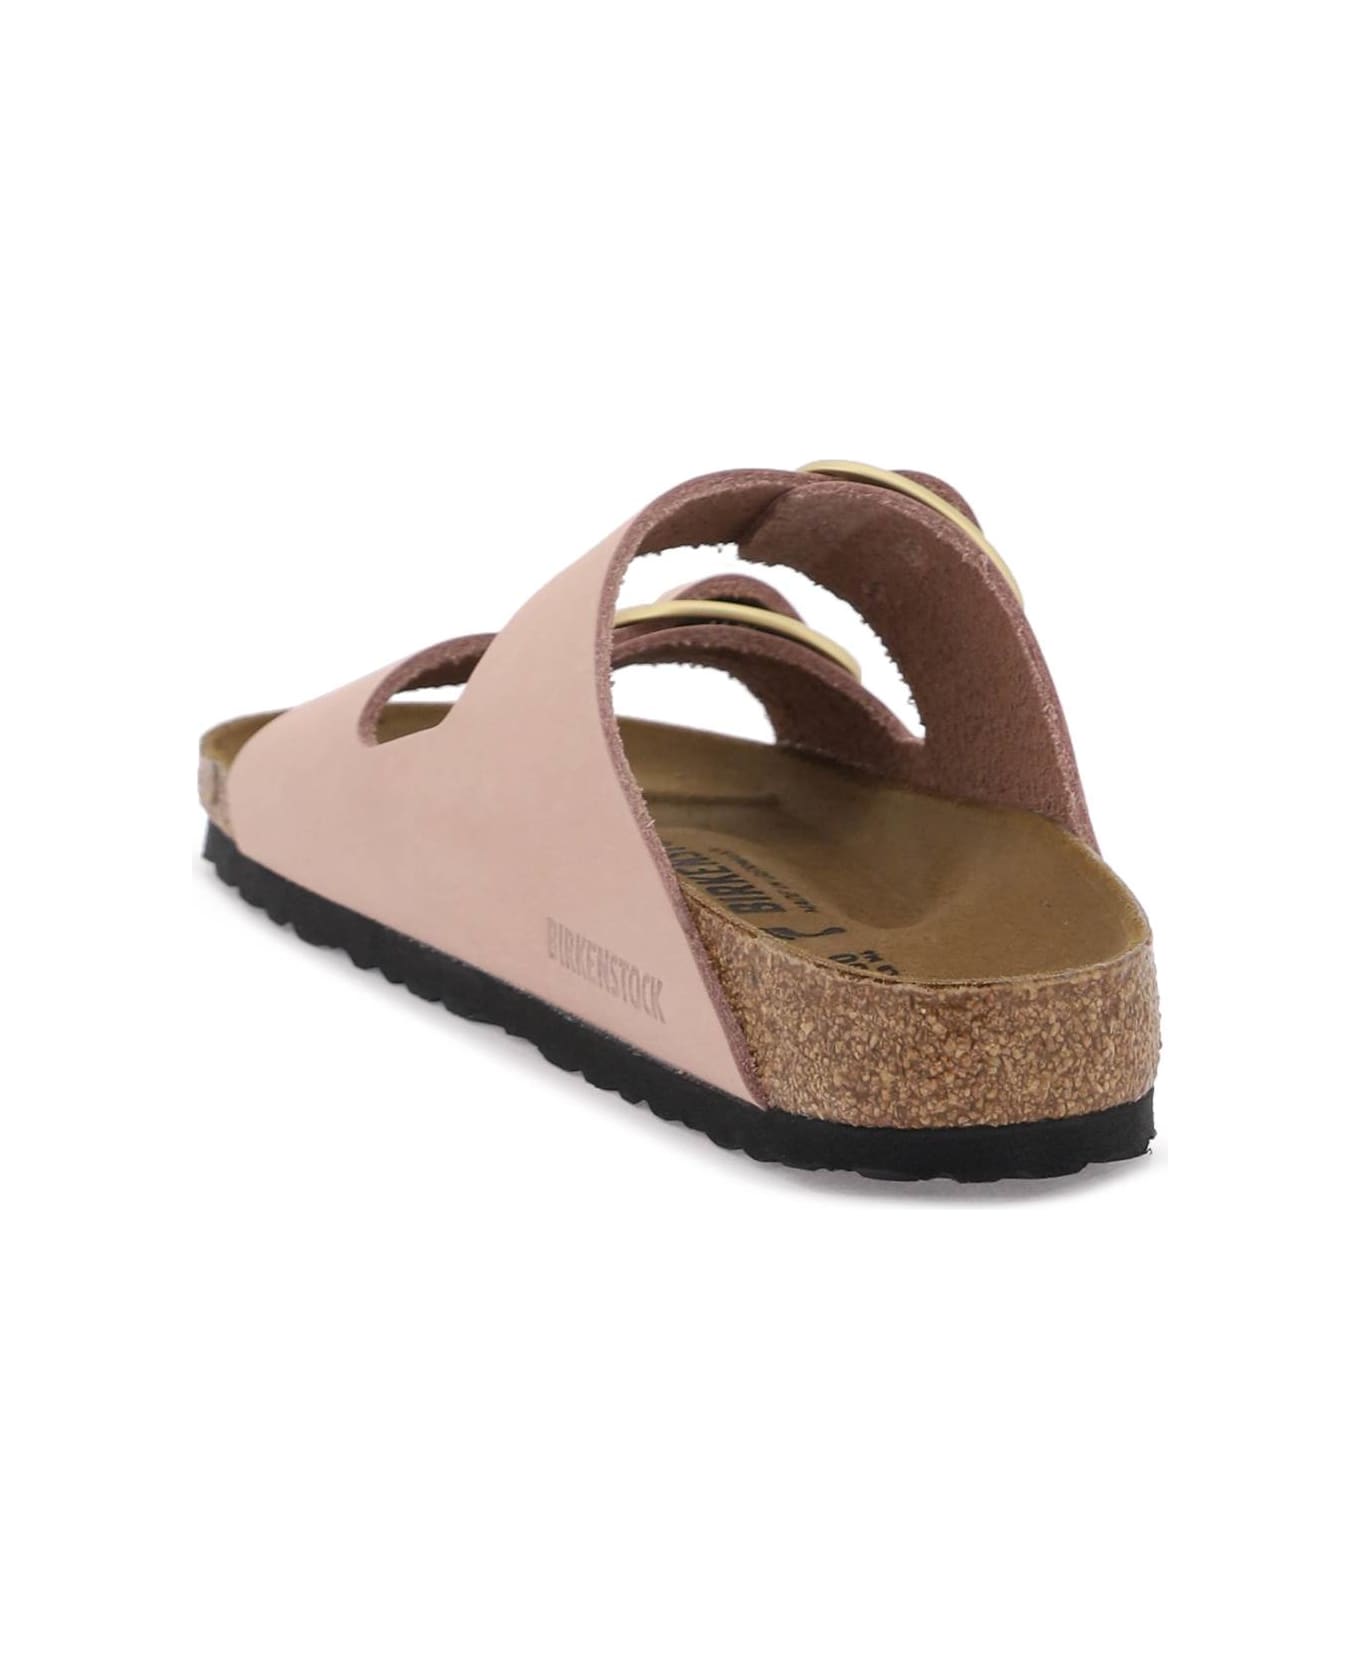 Birkenstock Arizona Big Buckle Sandals - Pink フラットシューズ